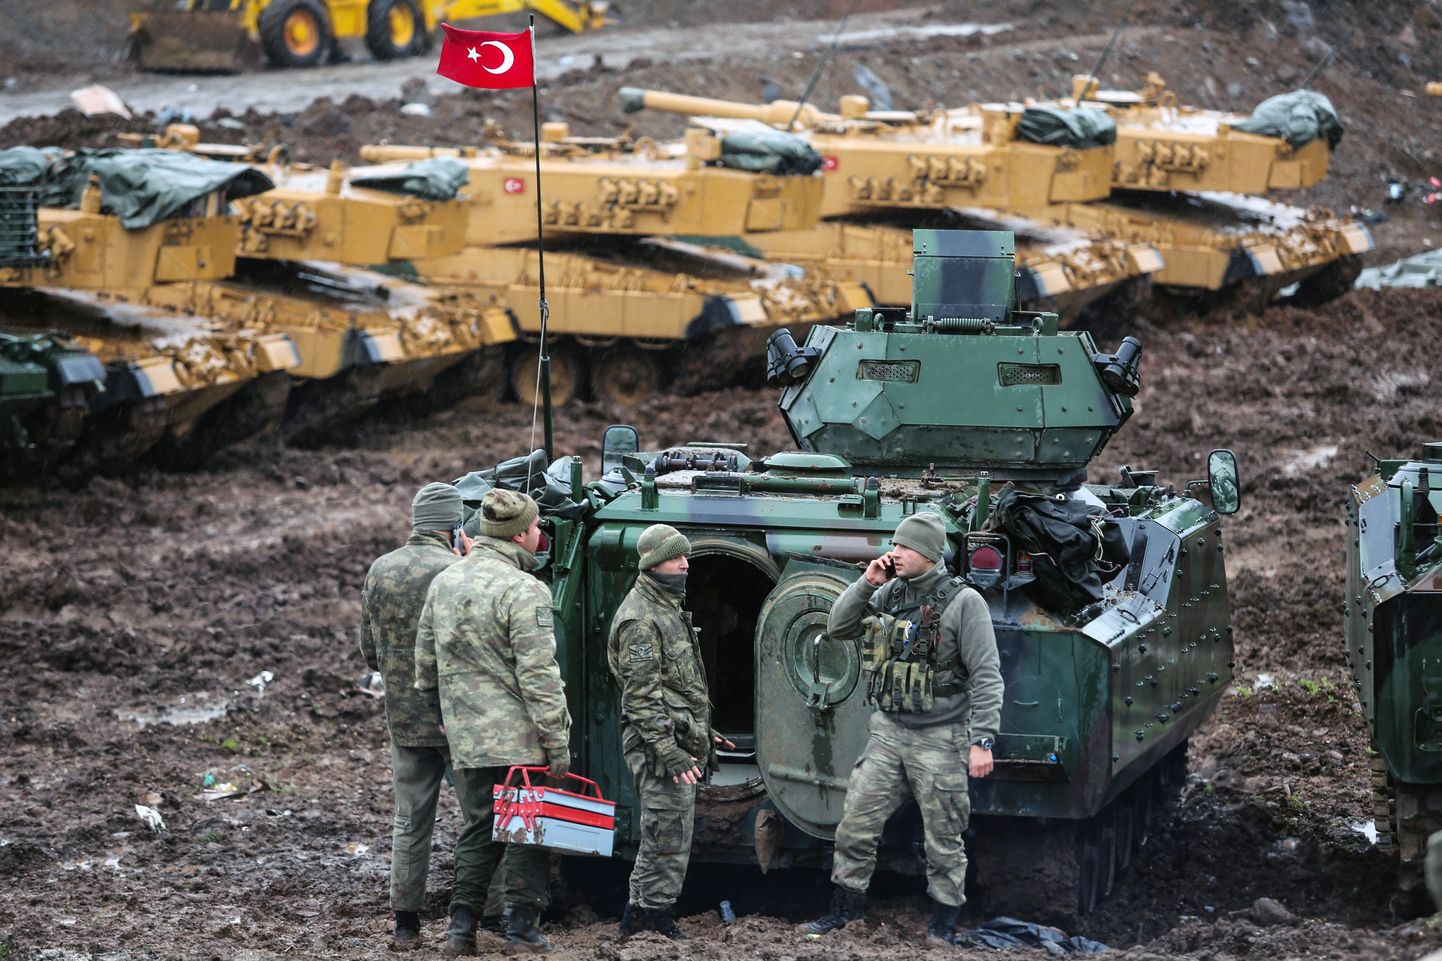 Eelmise nädala laupäeval alustas Türgi Süürias operatsiooni Oliivioks, mis on suunatud kurdide vastu. Türgi poolel võitlevad Ankara-meelsed Süüria mässulised, kellele tuletoetust pakutakse. Türgi president Recep Tayyip Erdogan ähvardas Süürias toimuva operatsiooni laiendamisega.